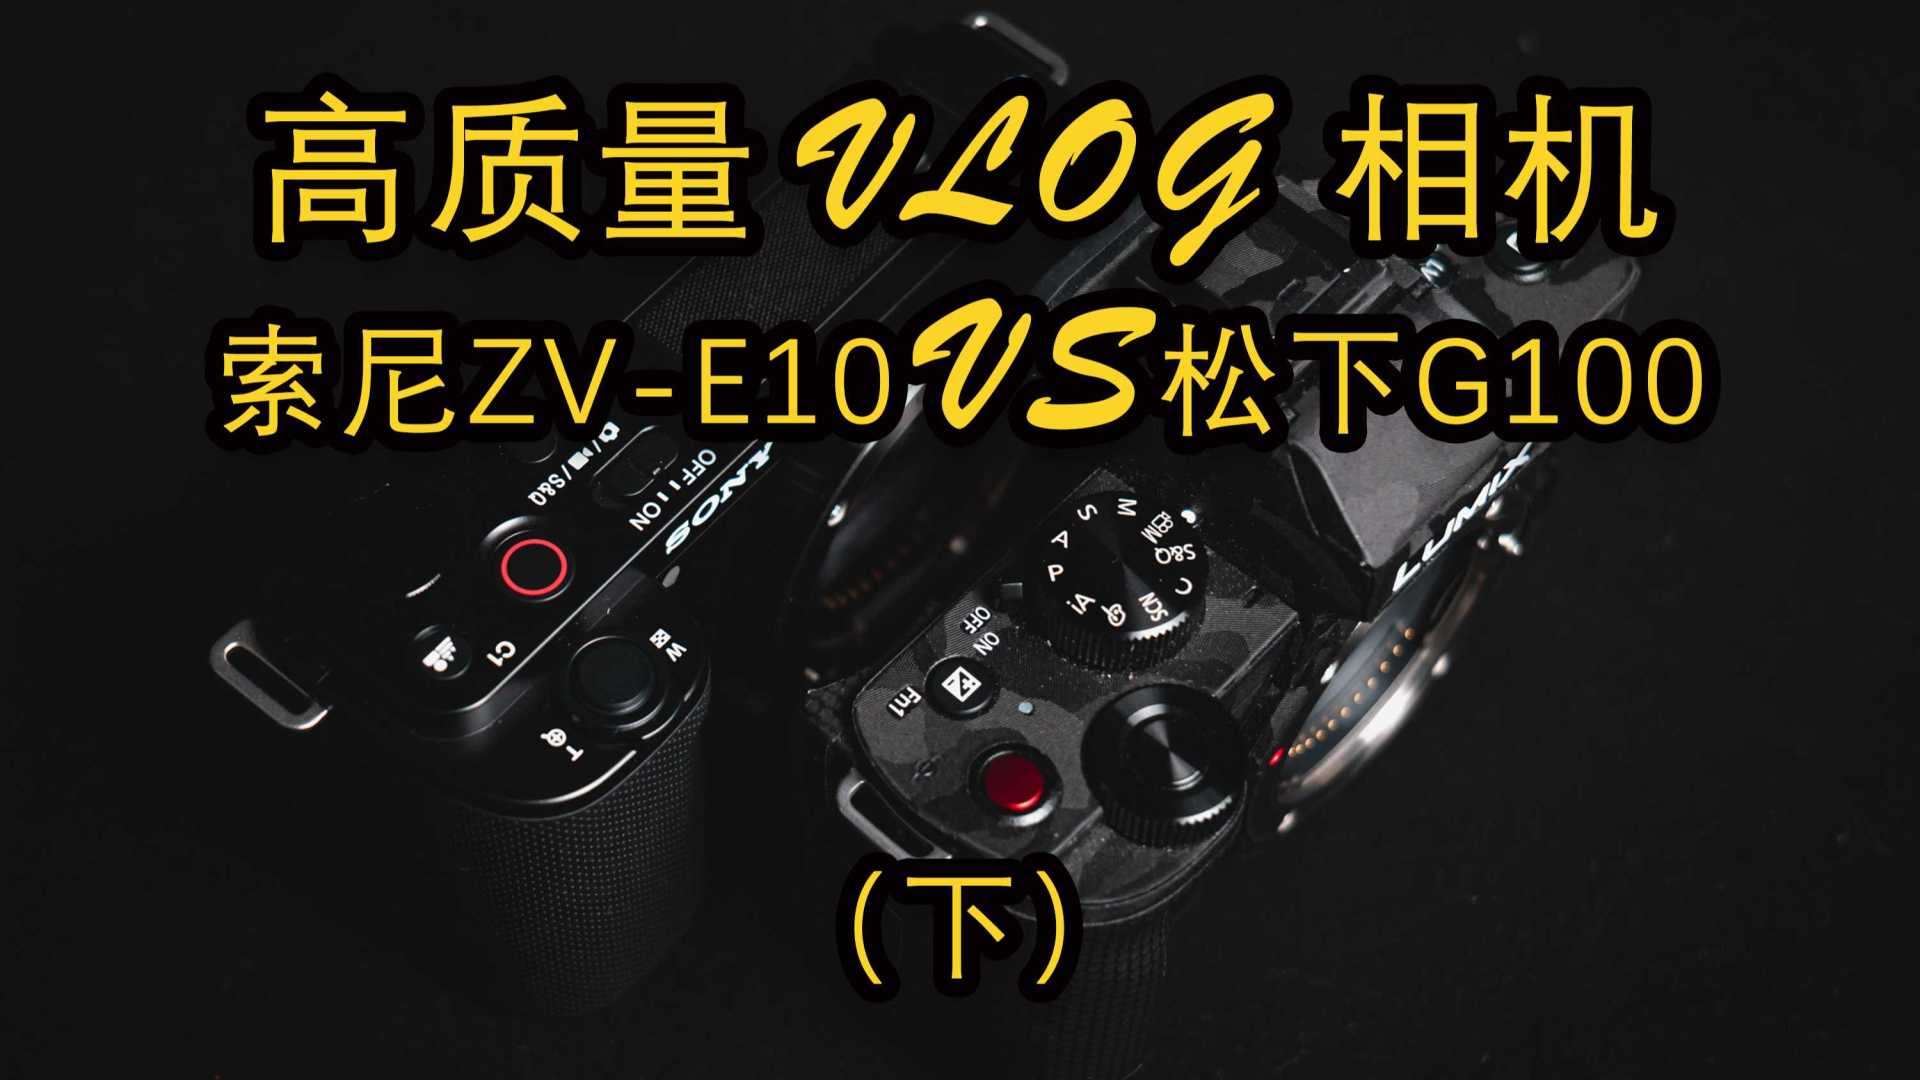 索尼ZV-E10对比松下G100-下丨裁切视角、防抖、收音等